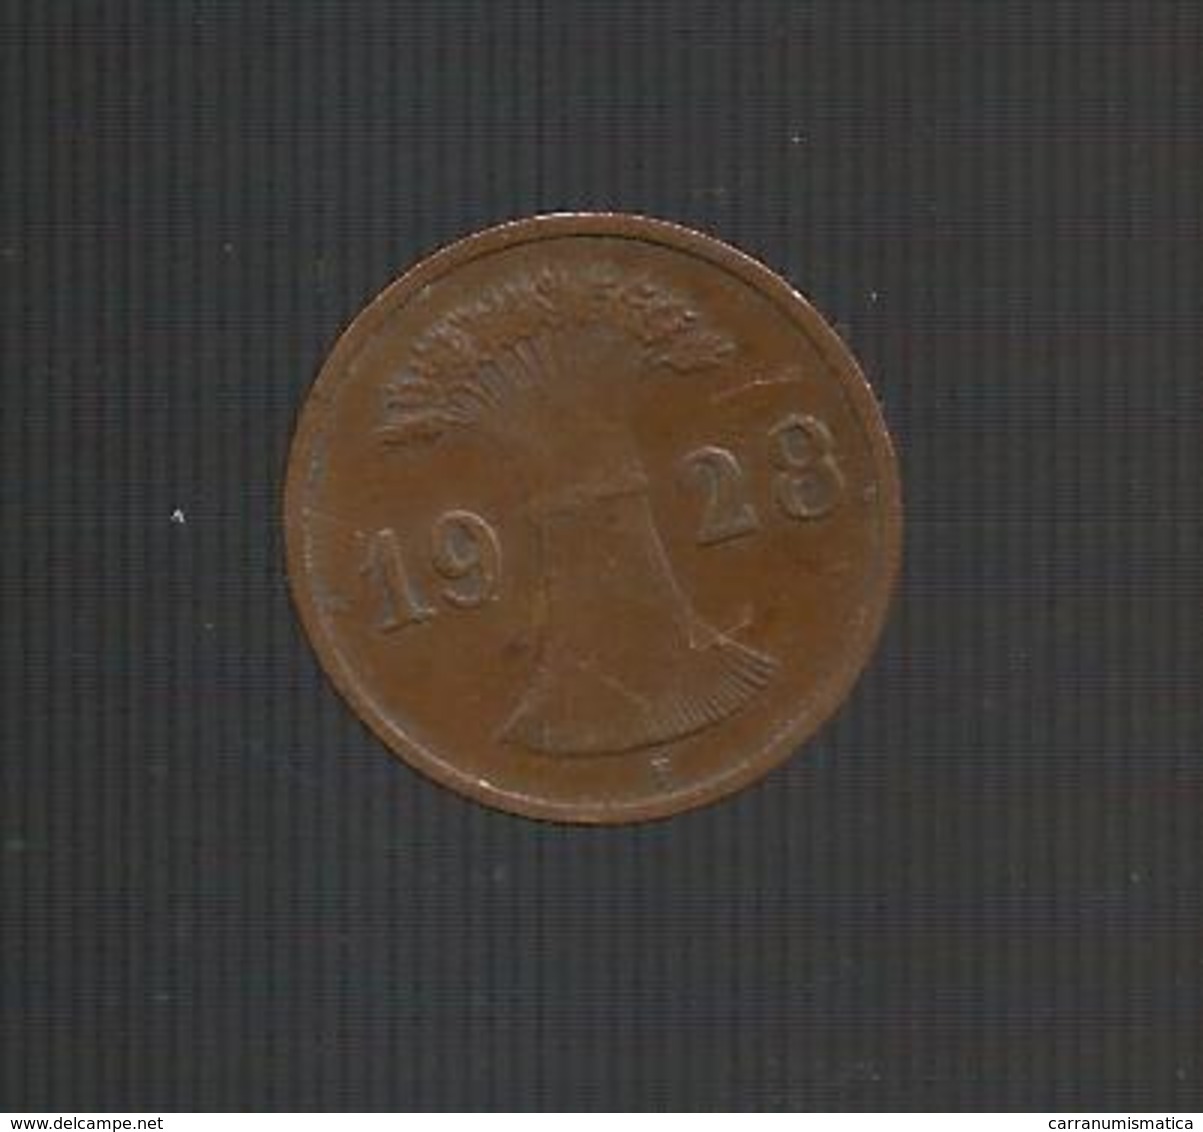 DEUTSCHLAND / GERMANY - Weimarer Republik - 1 REICHSPFENNIG ( 1928 F ) - 1 Renten- & 1 Reichspfennig